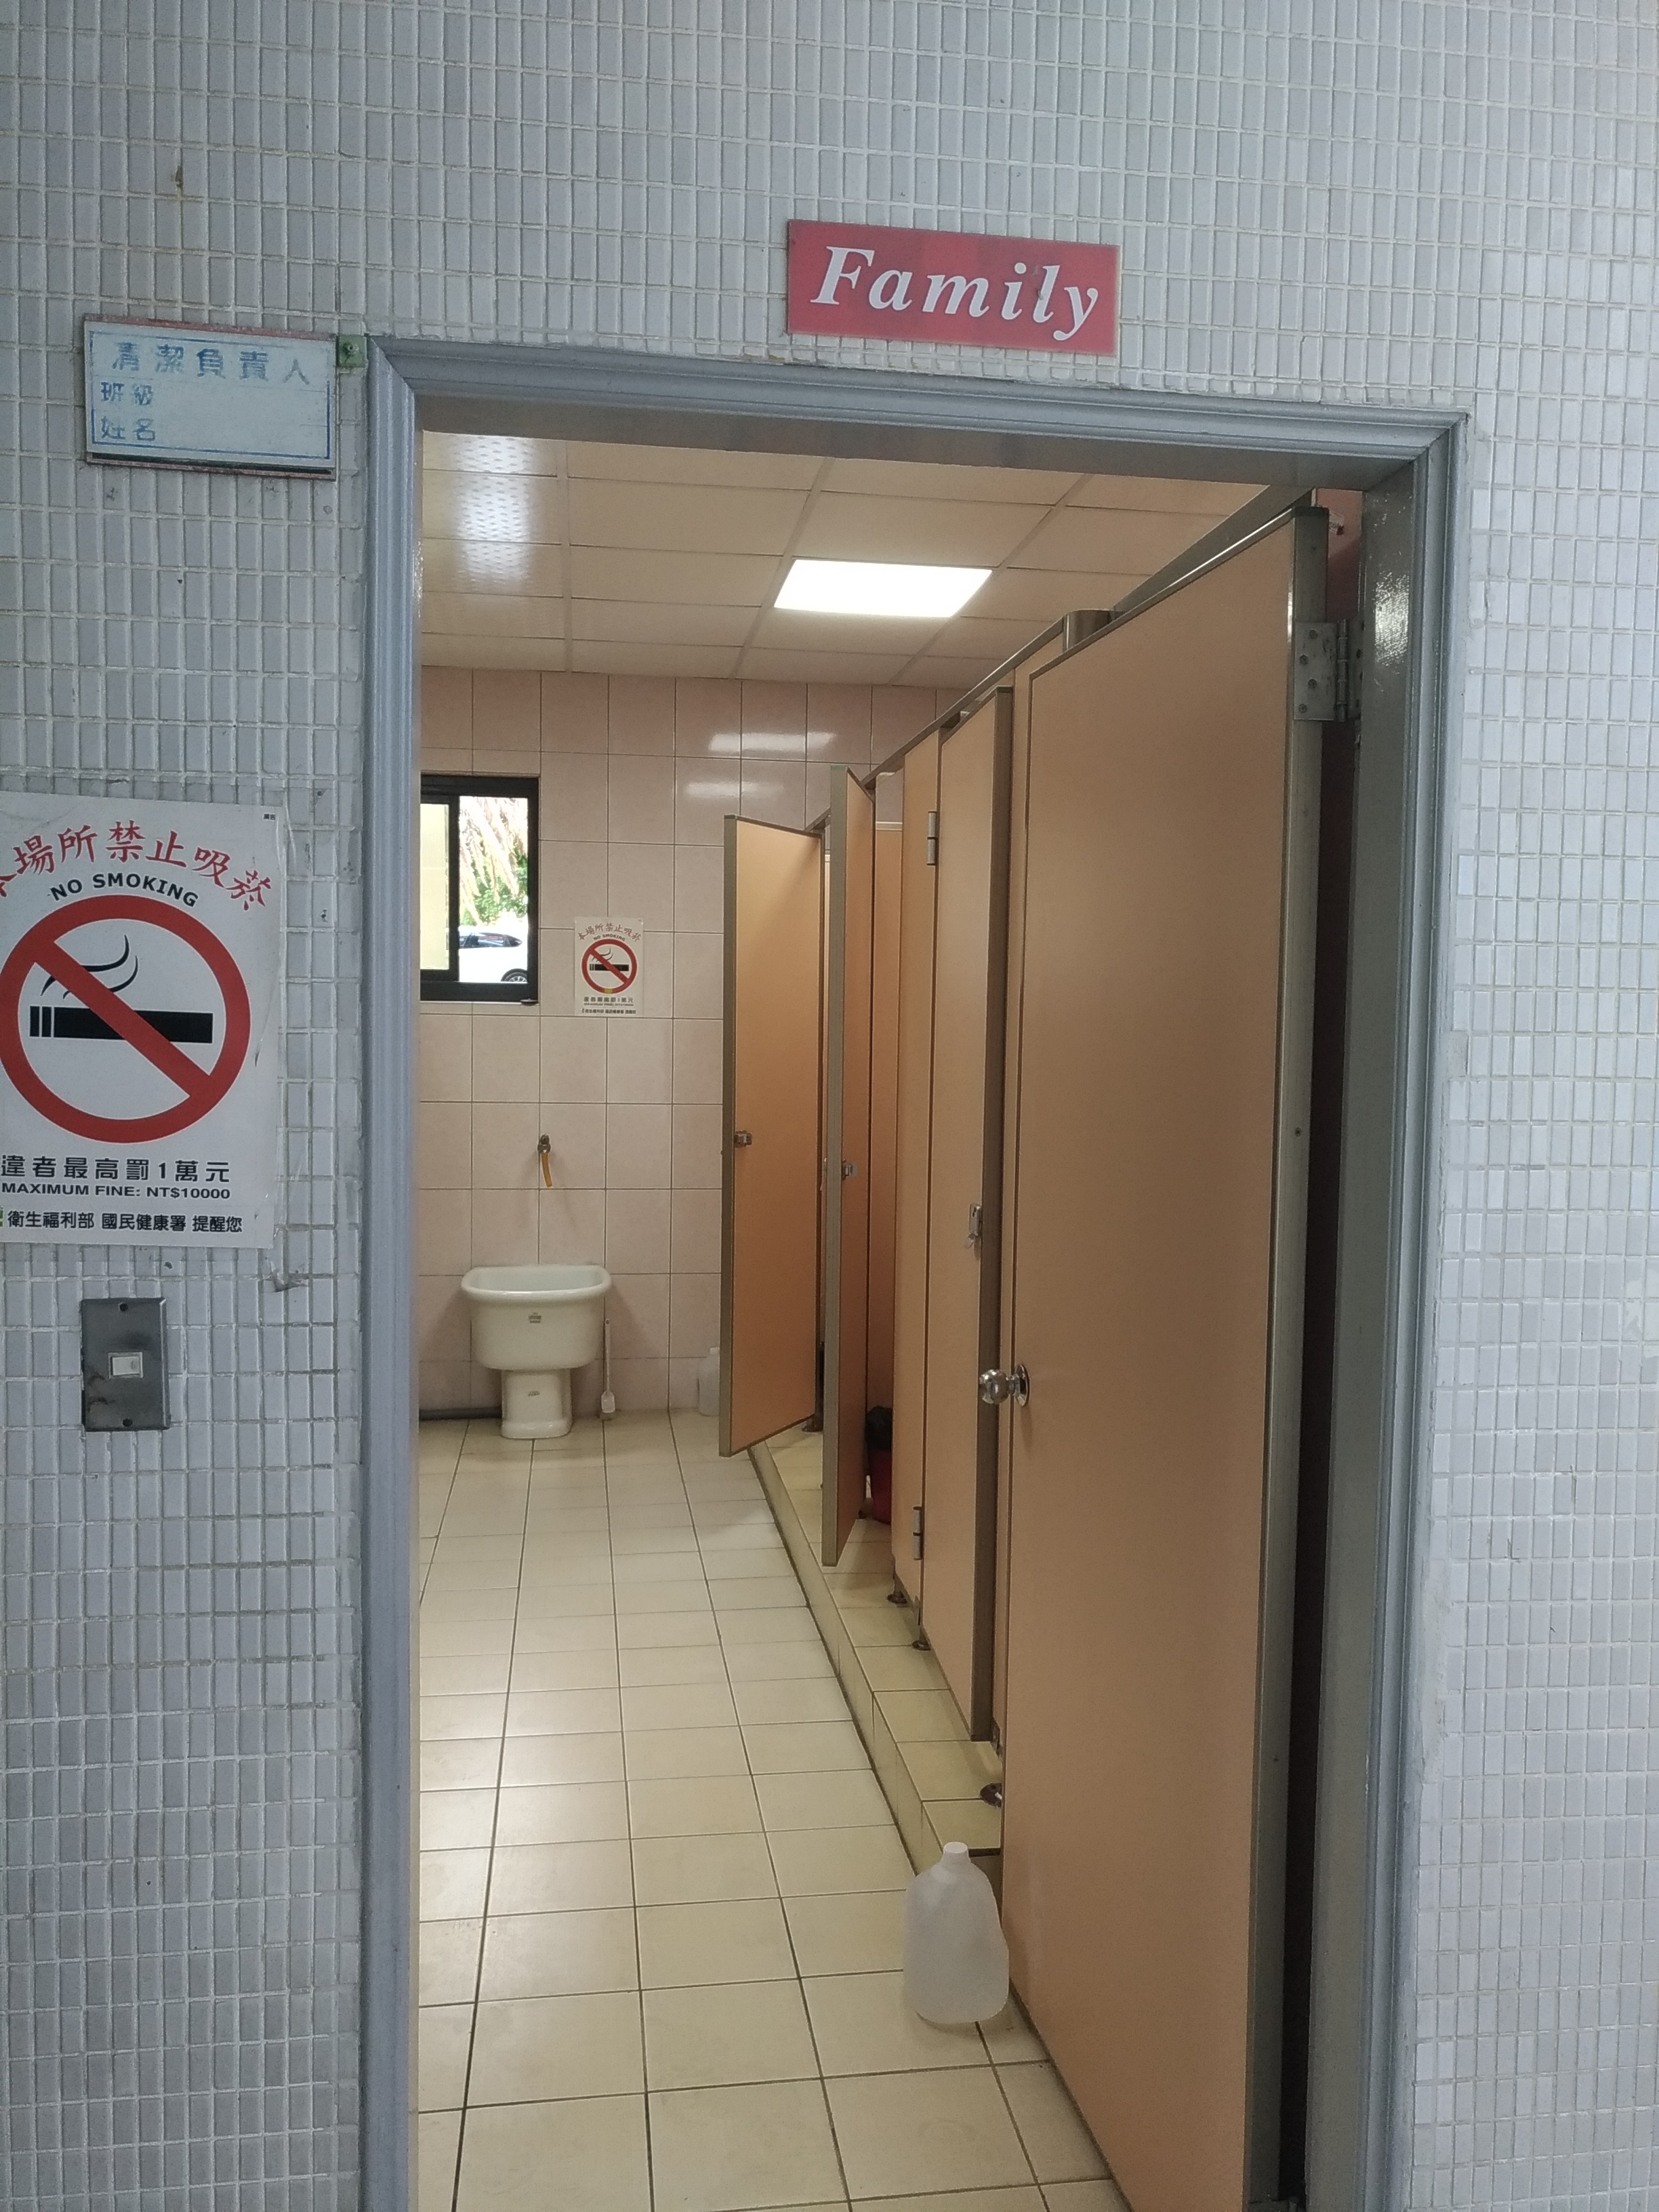 性別友善廁所